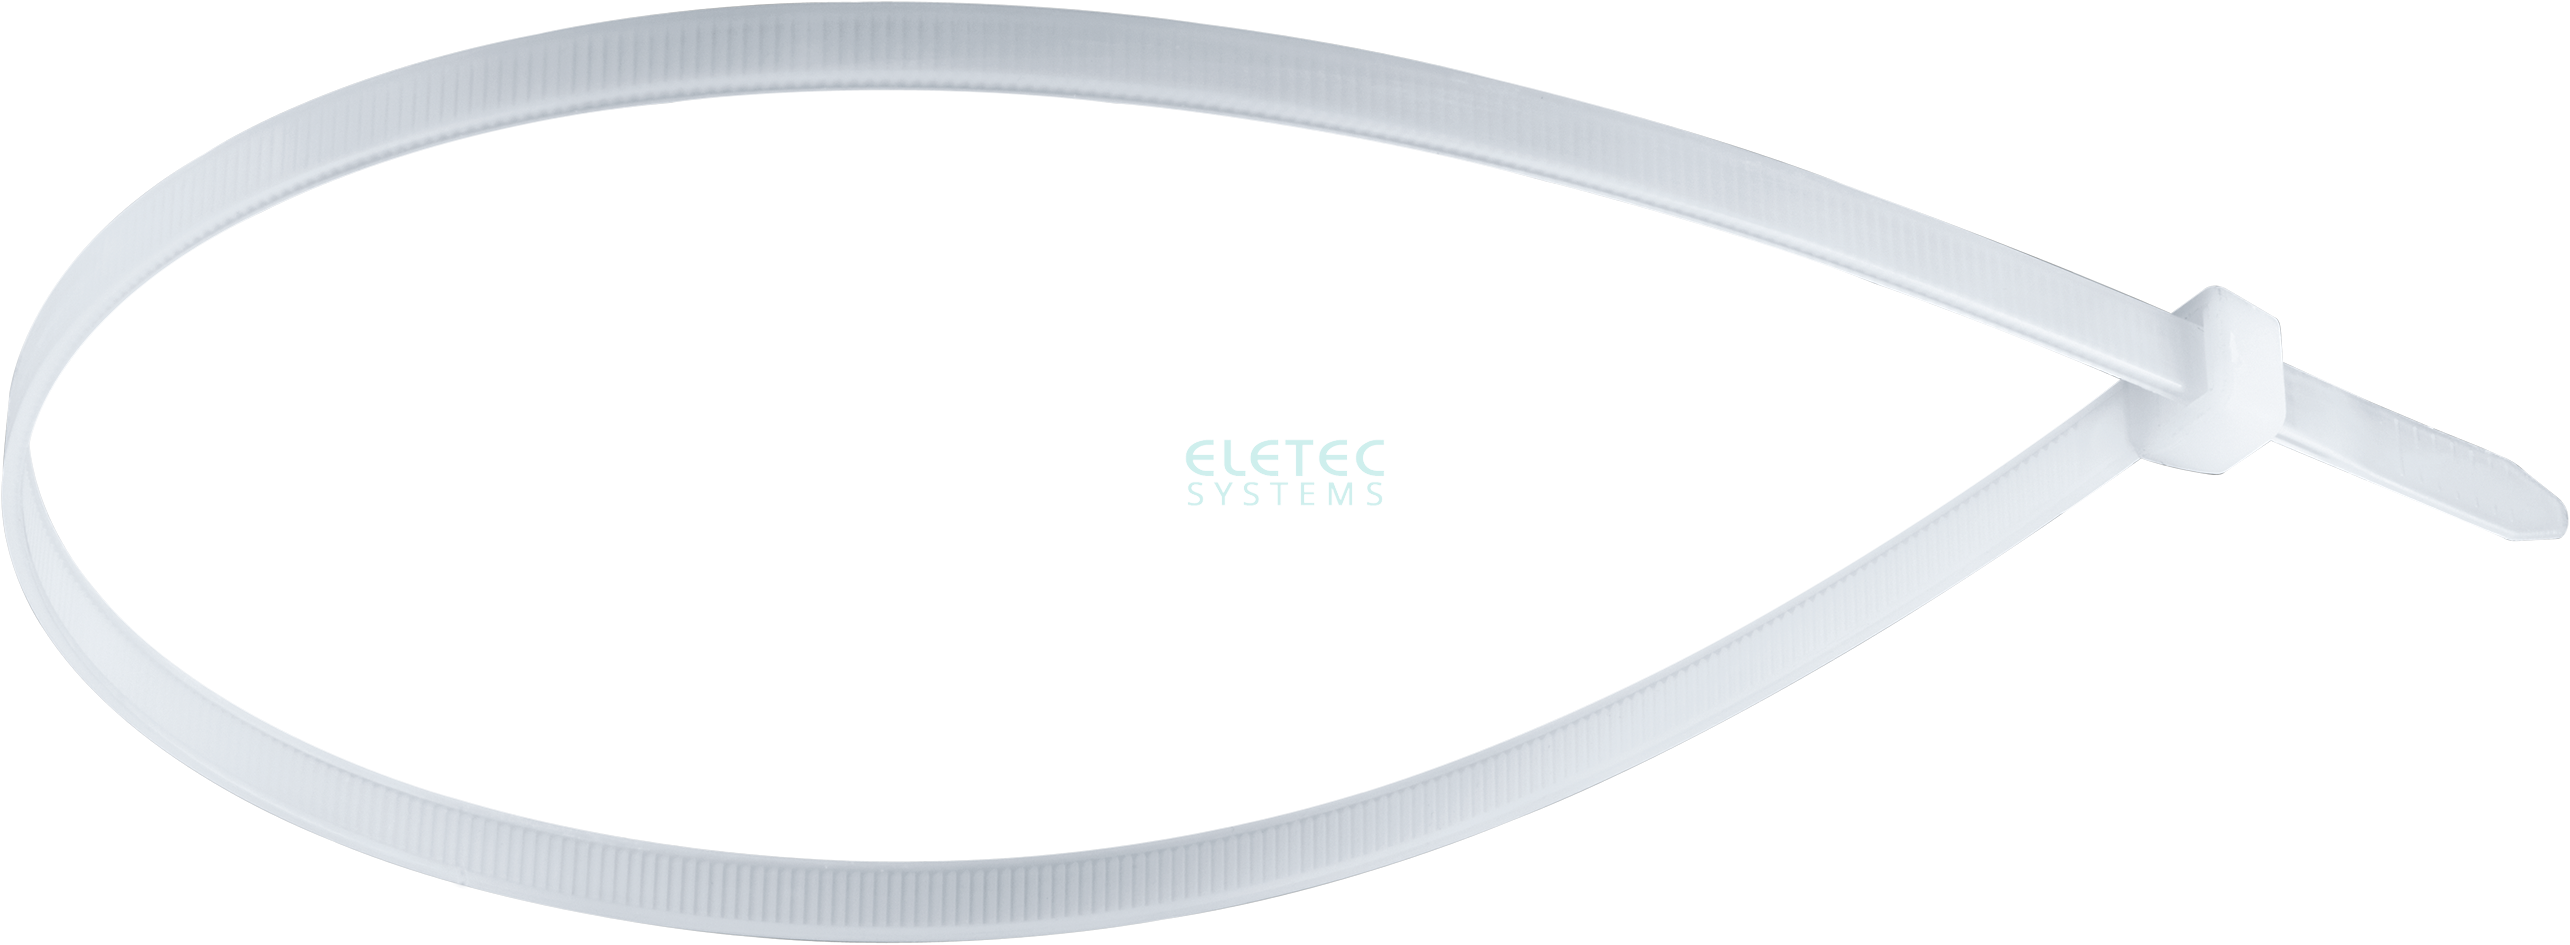 картинка Стяжка для кабеля 160х2,5 бесцветная (100 шт) Eletec Systems